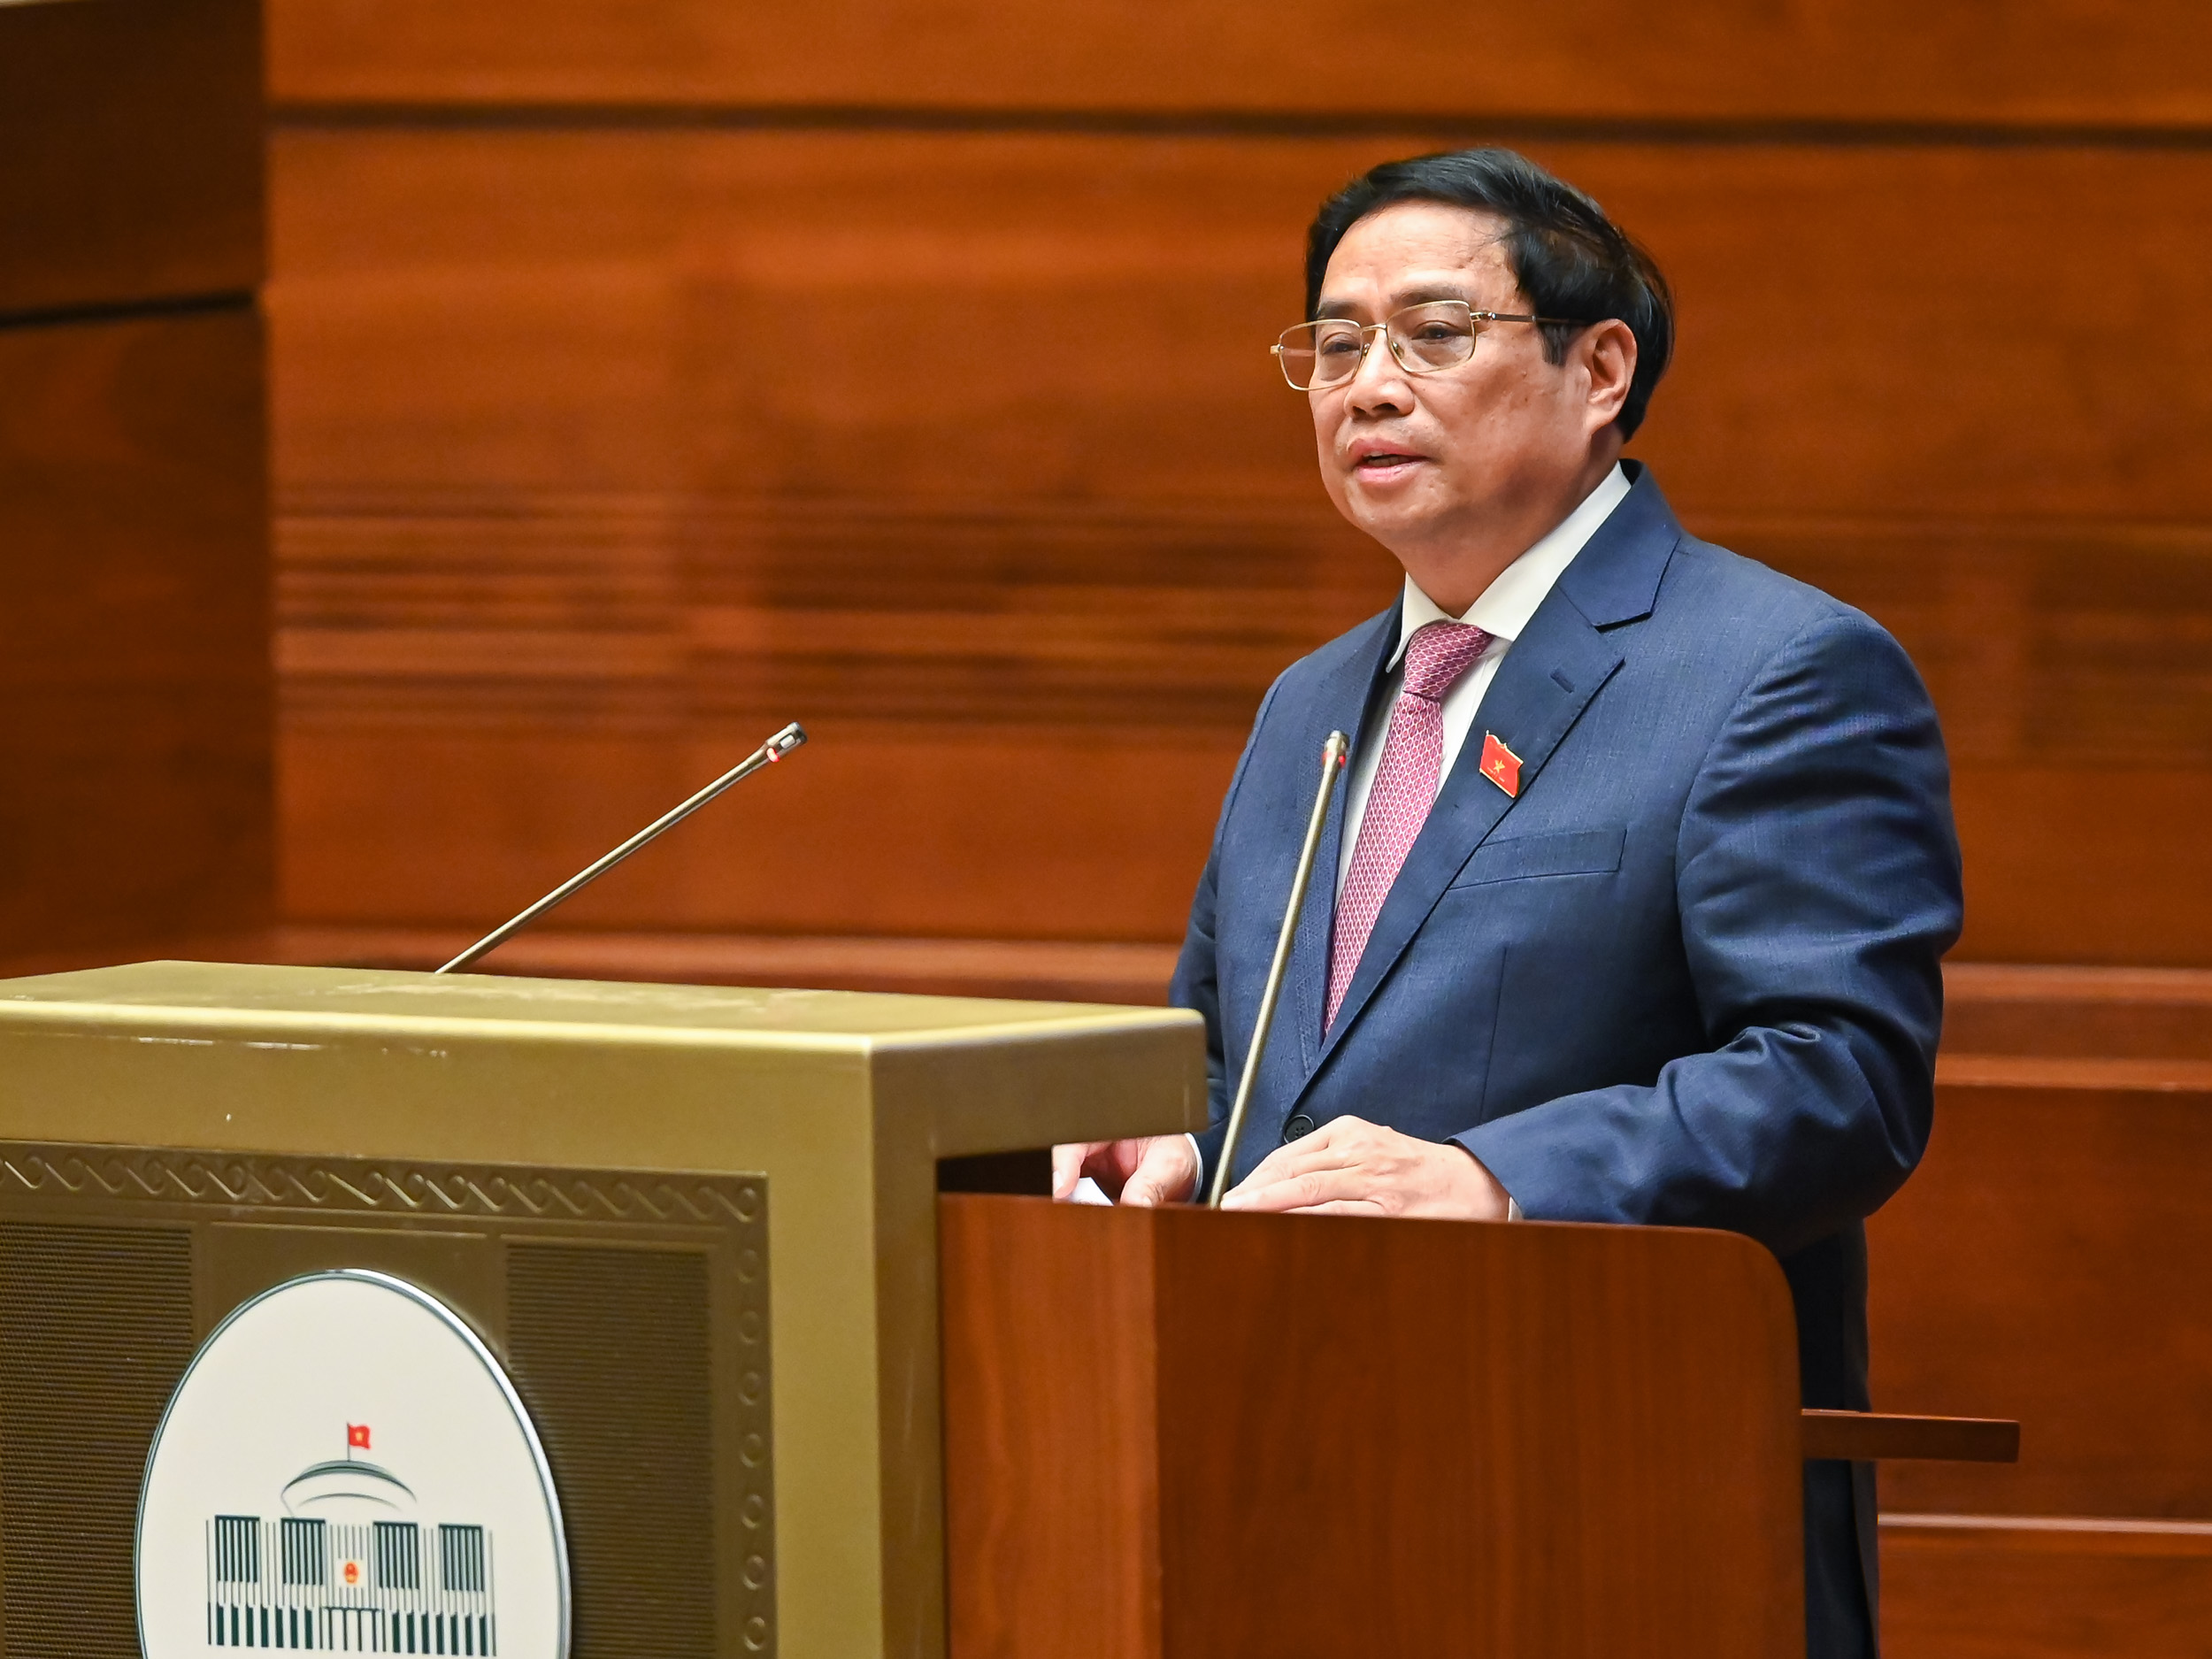 Thủ tướng Phạm Minh Chính báo cáo trước Quốc hội về kết quả thực hiện kế hoạch phát triển kinh tế - xã hội năm 2022. Ảnh: Quốc hội.